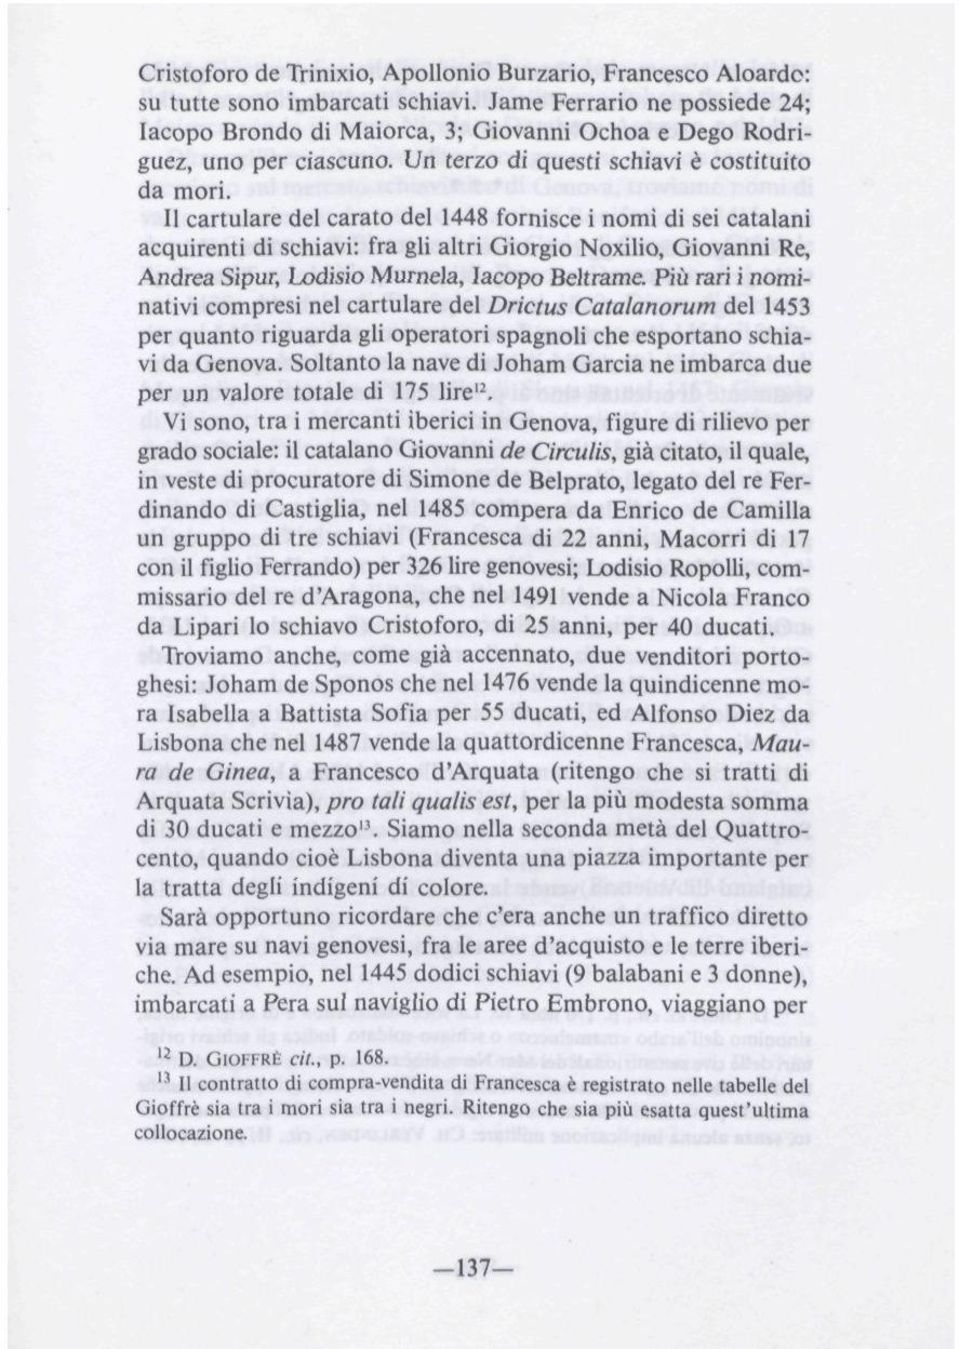 11 cartulare del carato del 1448 fornisce i nomi di se catalani acquirenti di schiavi: fra gli altri Giorgio Noxilio, Giovanni Re, Andrea Sipur, Lodisio Murnela, Iacopo Beltrame.